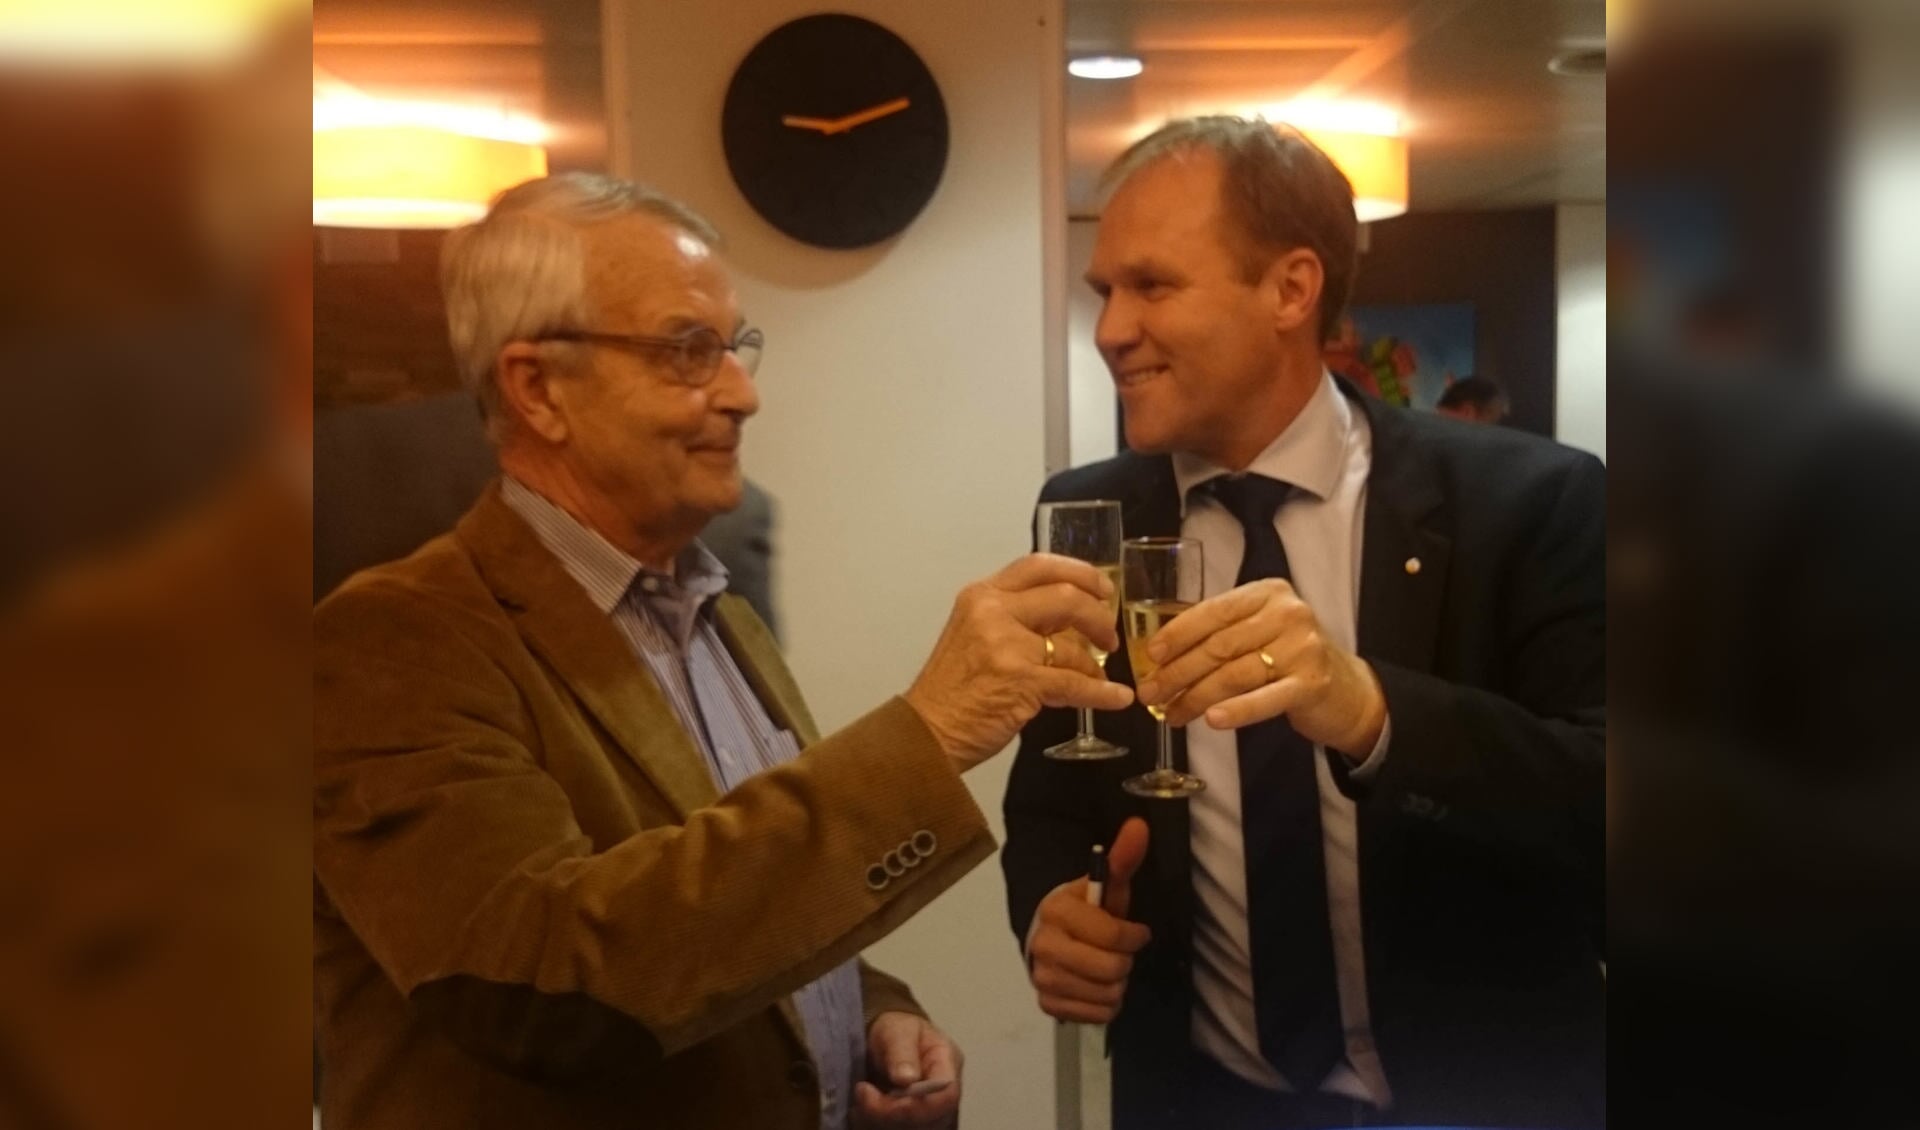 Terriërs voorzitter Wytze van der Meer en Rabo manager Theo Groot proosten op de nieuwe sponsorverbintenis!
